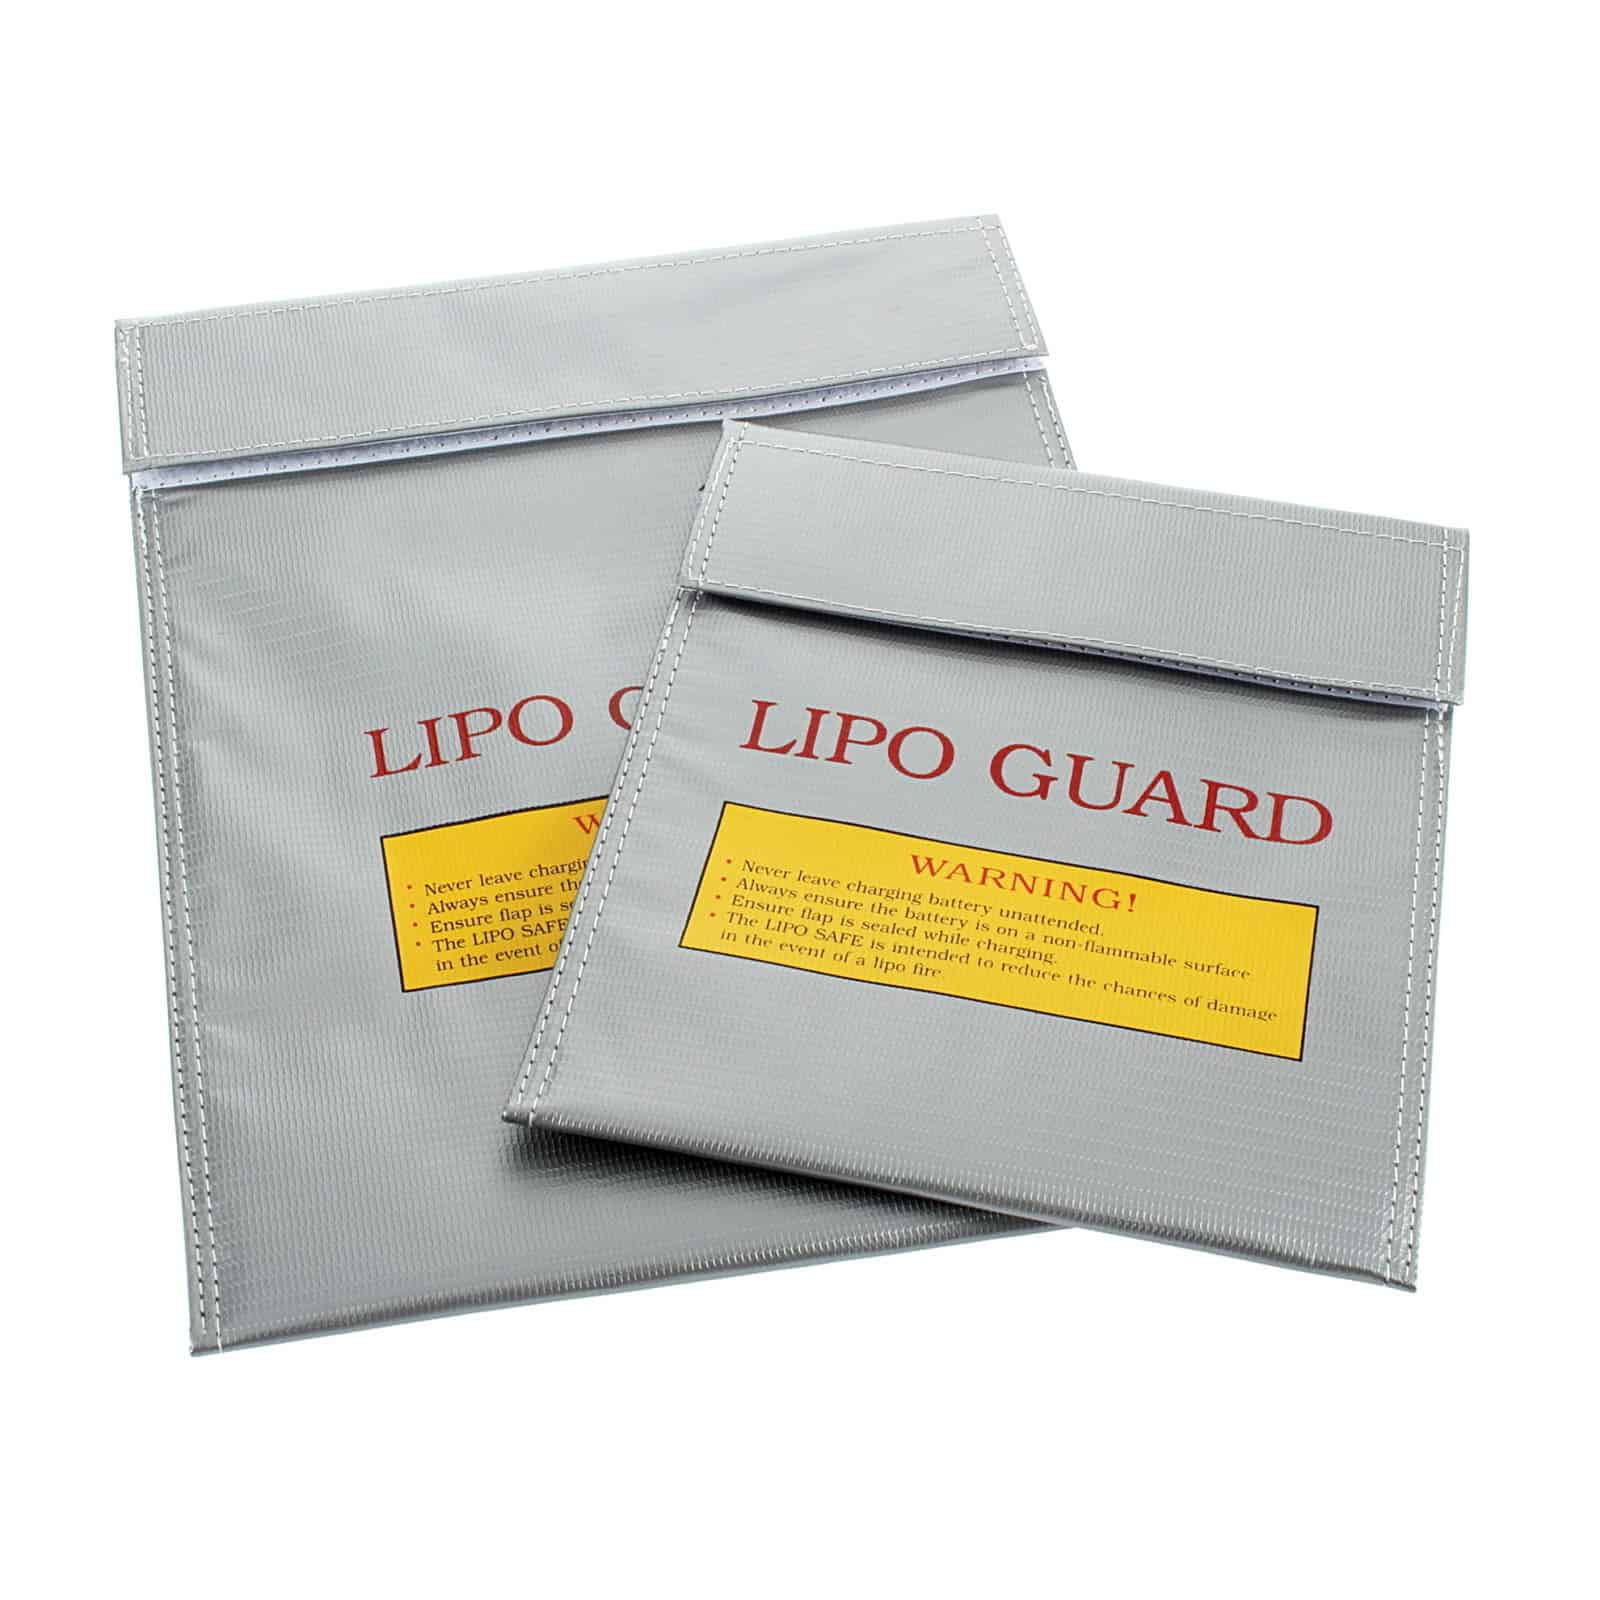 Lipo Guard ab nur 2,48 Euro (kostenloser Versand) aus China! Bringt Sicherheit beim Aufladen von Akkus (LiPo)!